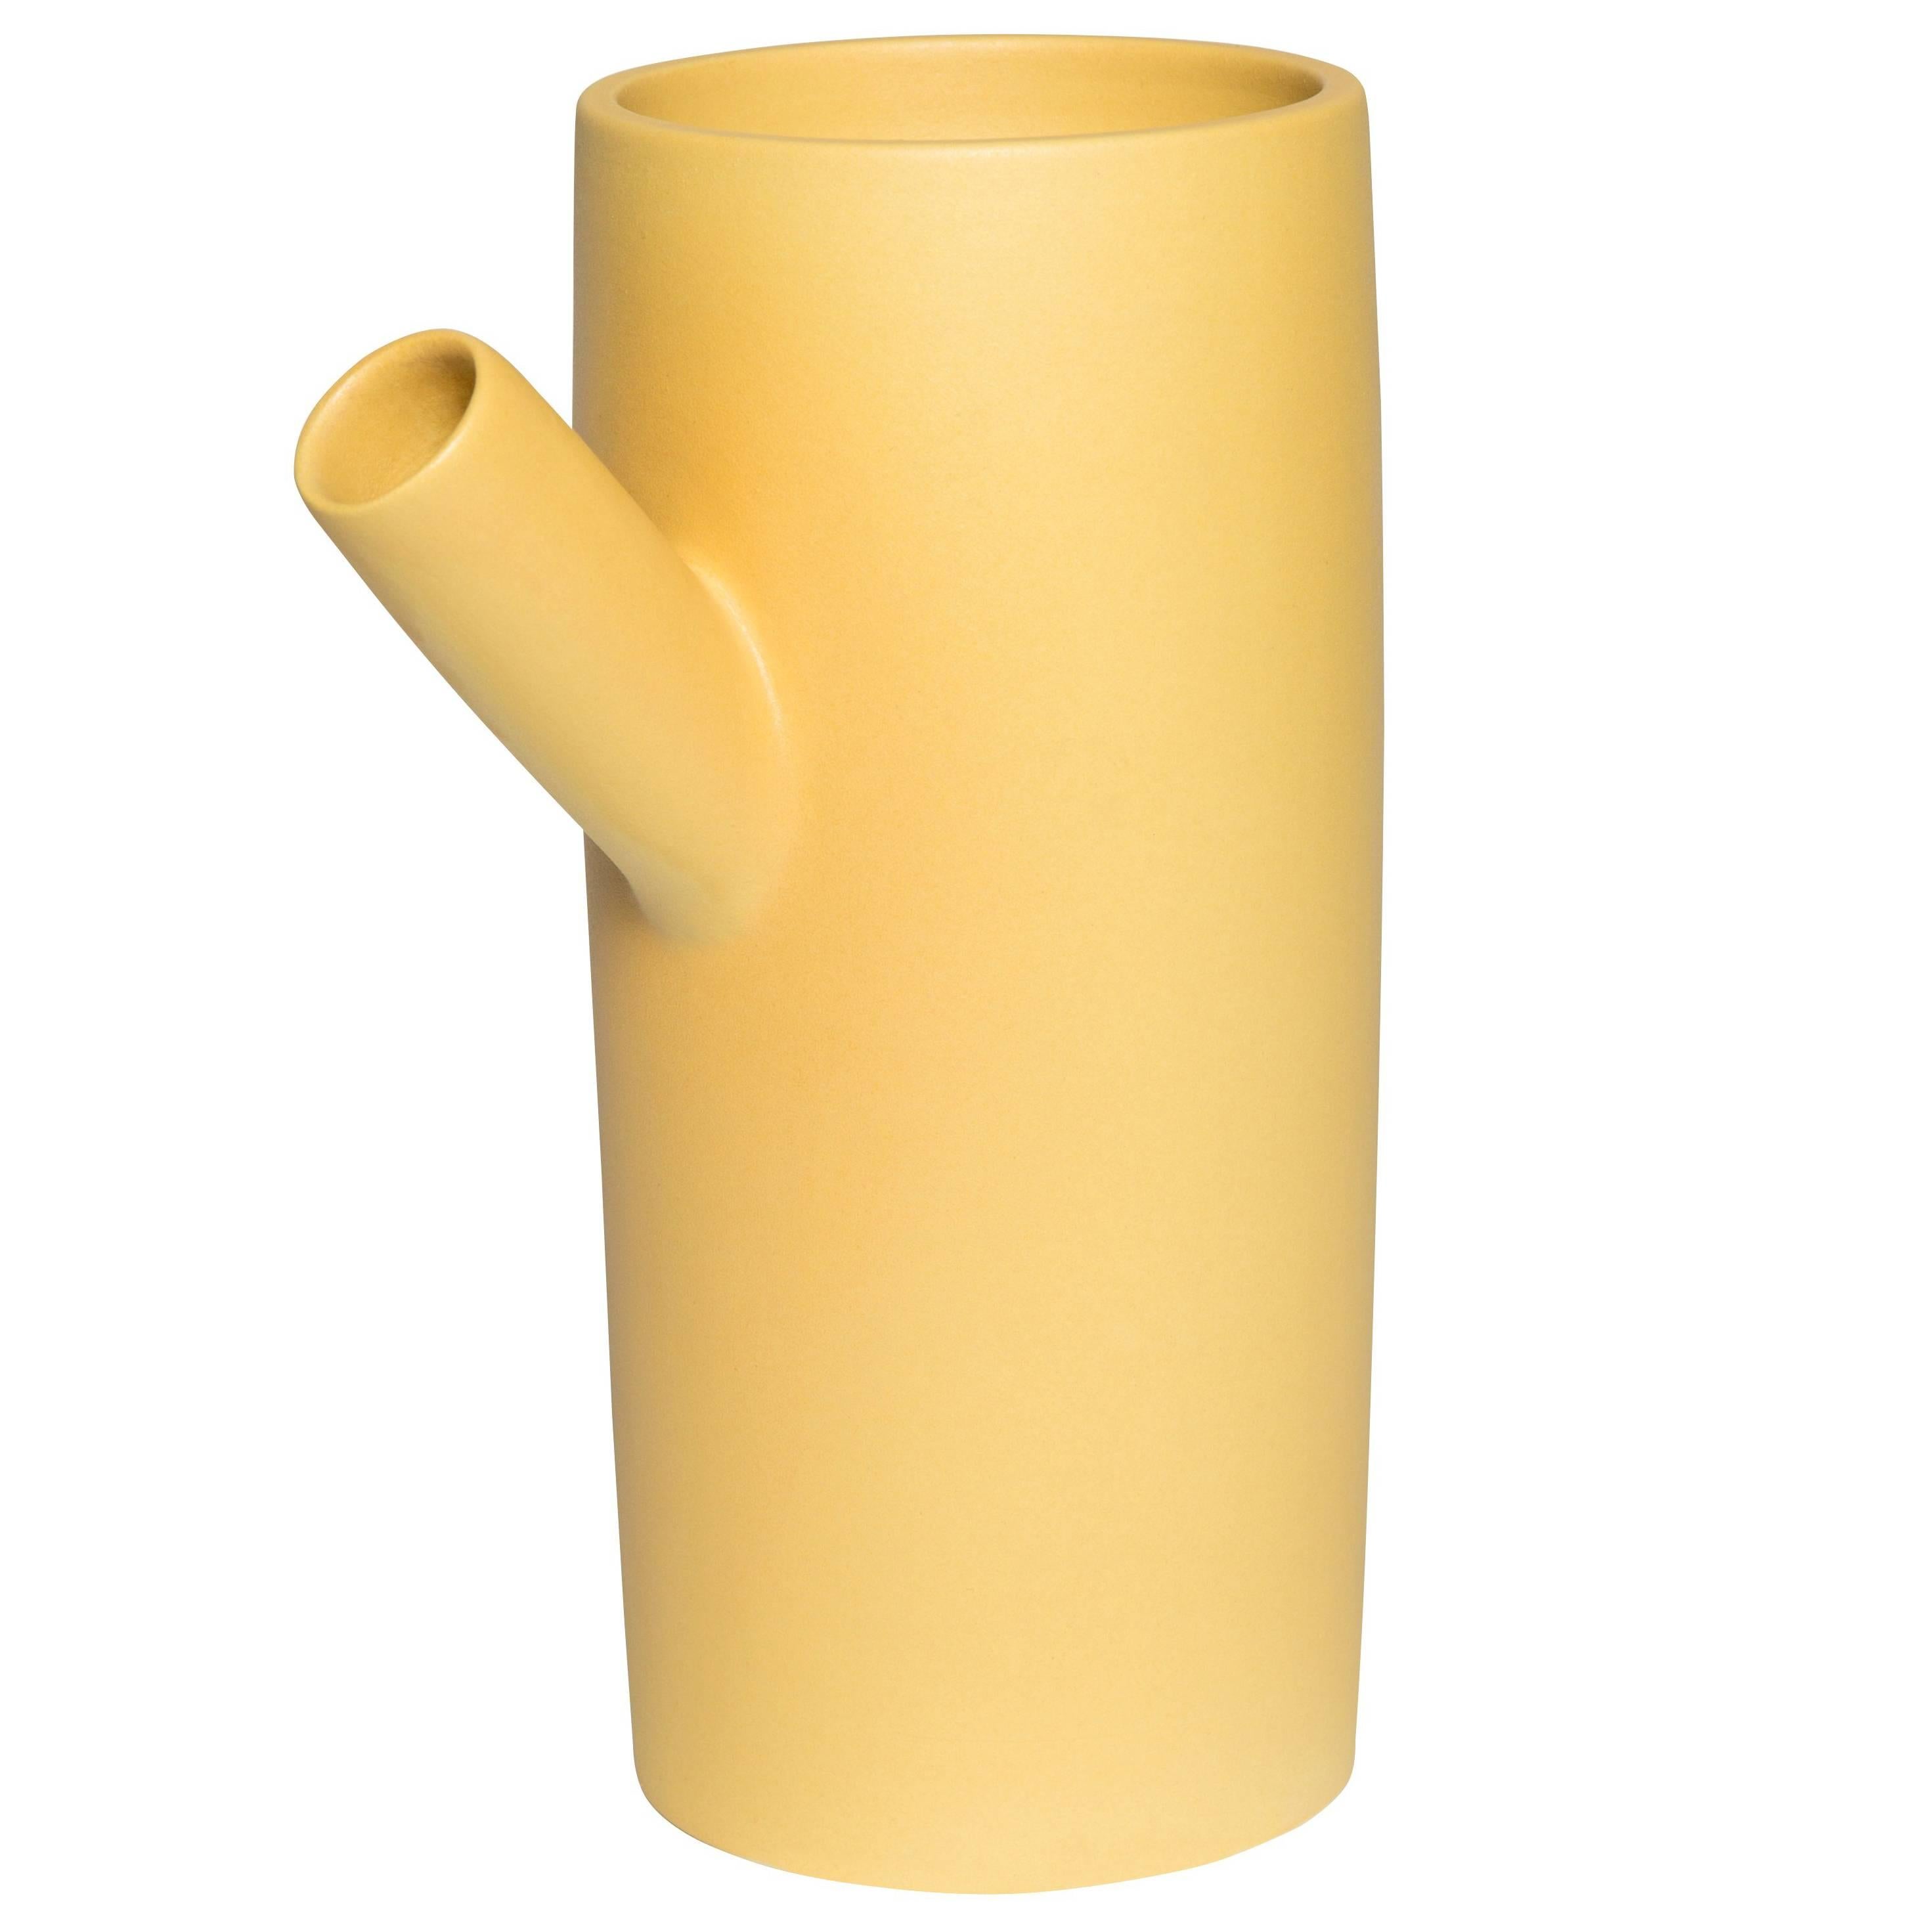  Vase en céramique Forsythia fait main par Pieces, pichet jaune moderne personnalisable